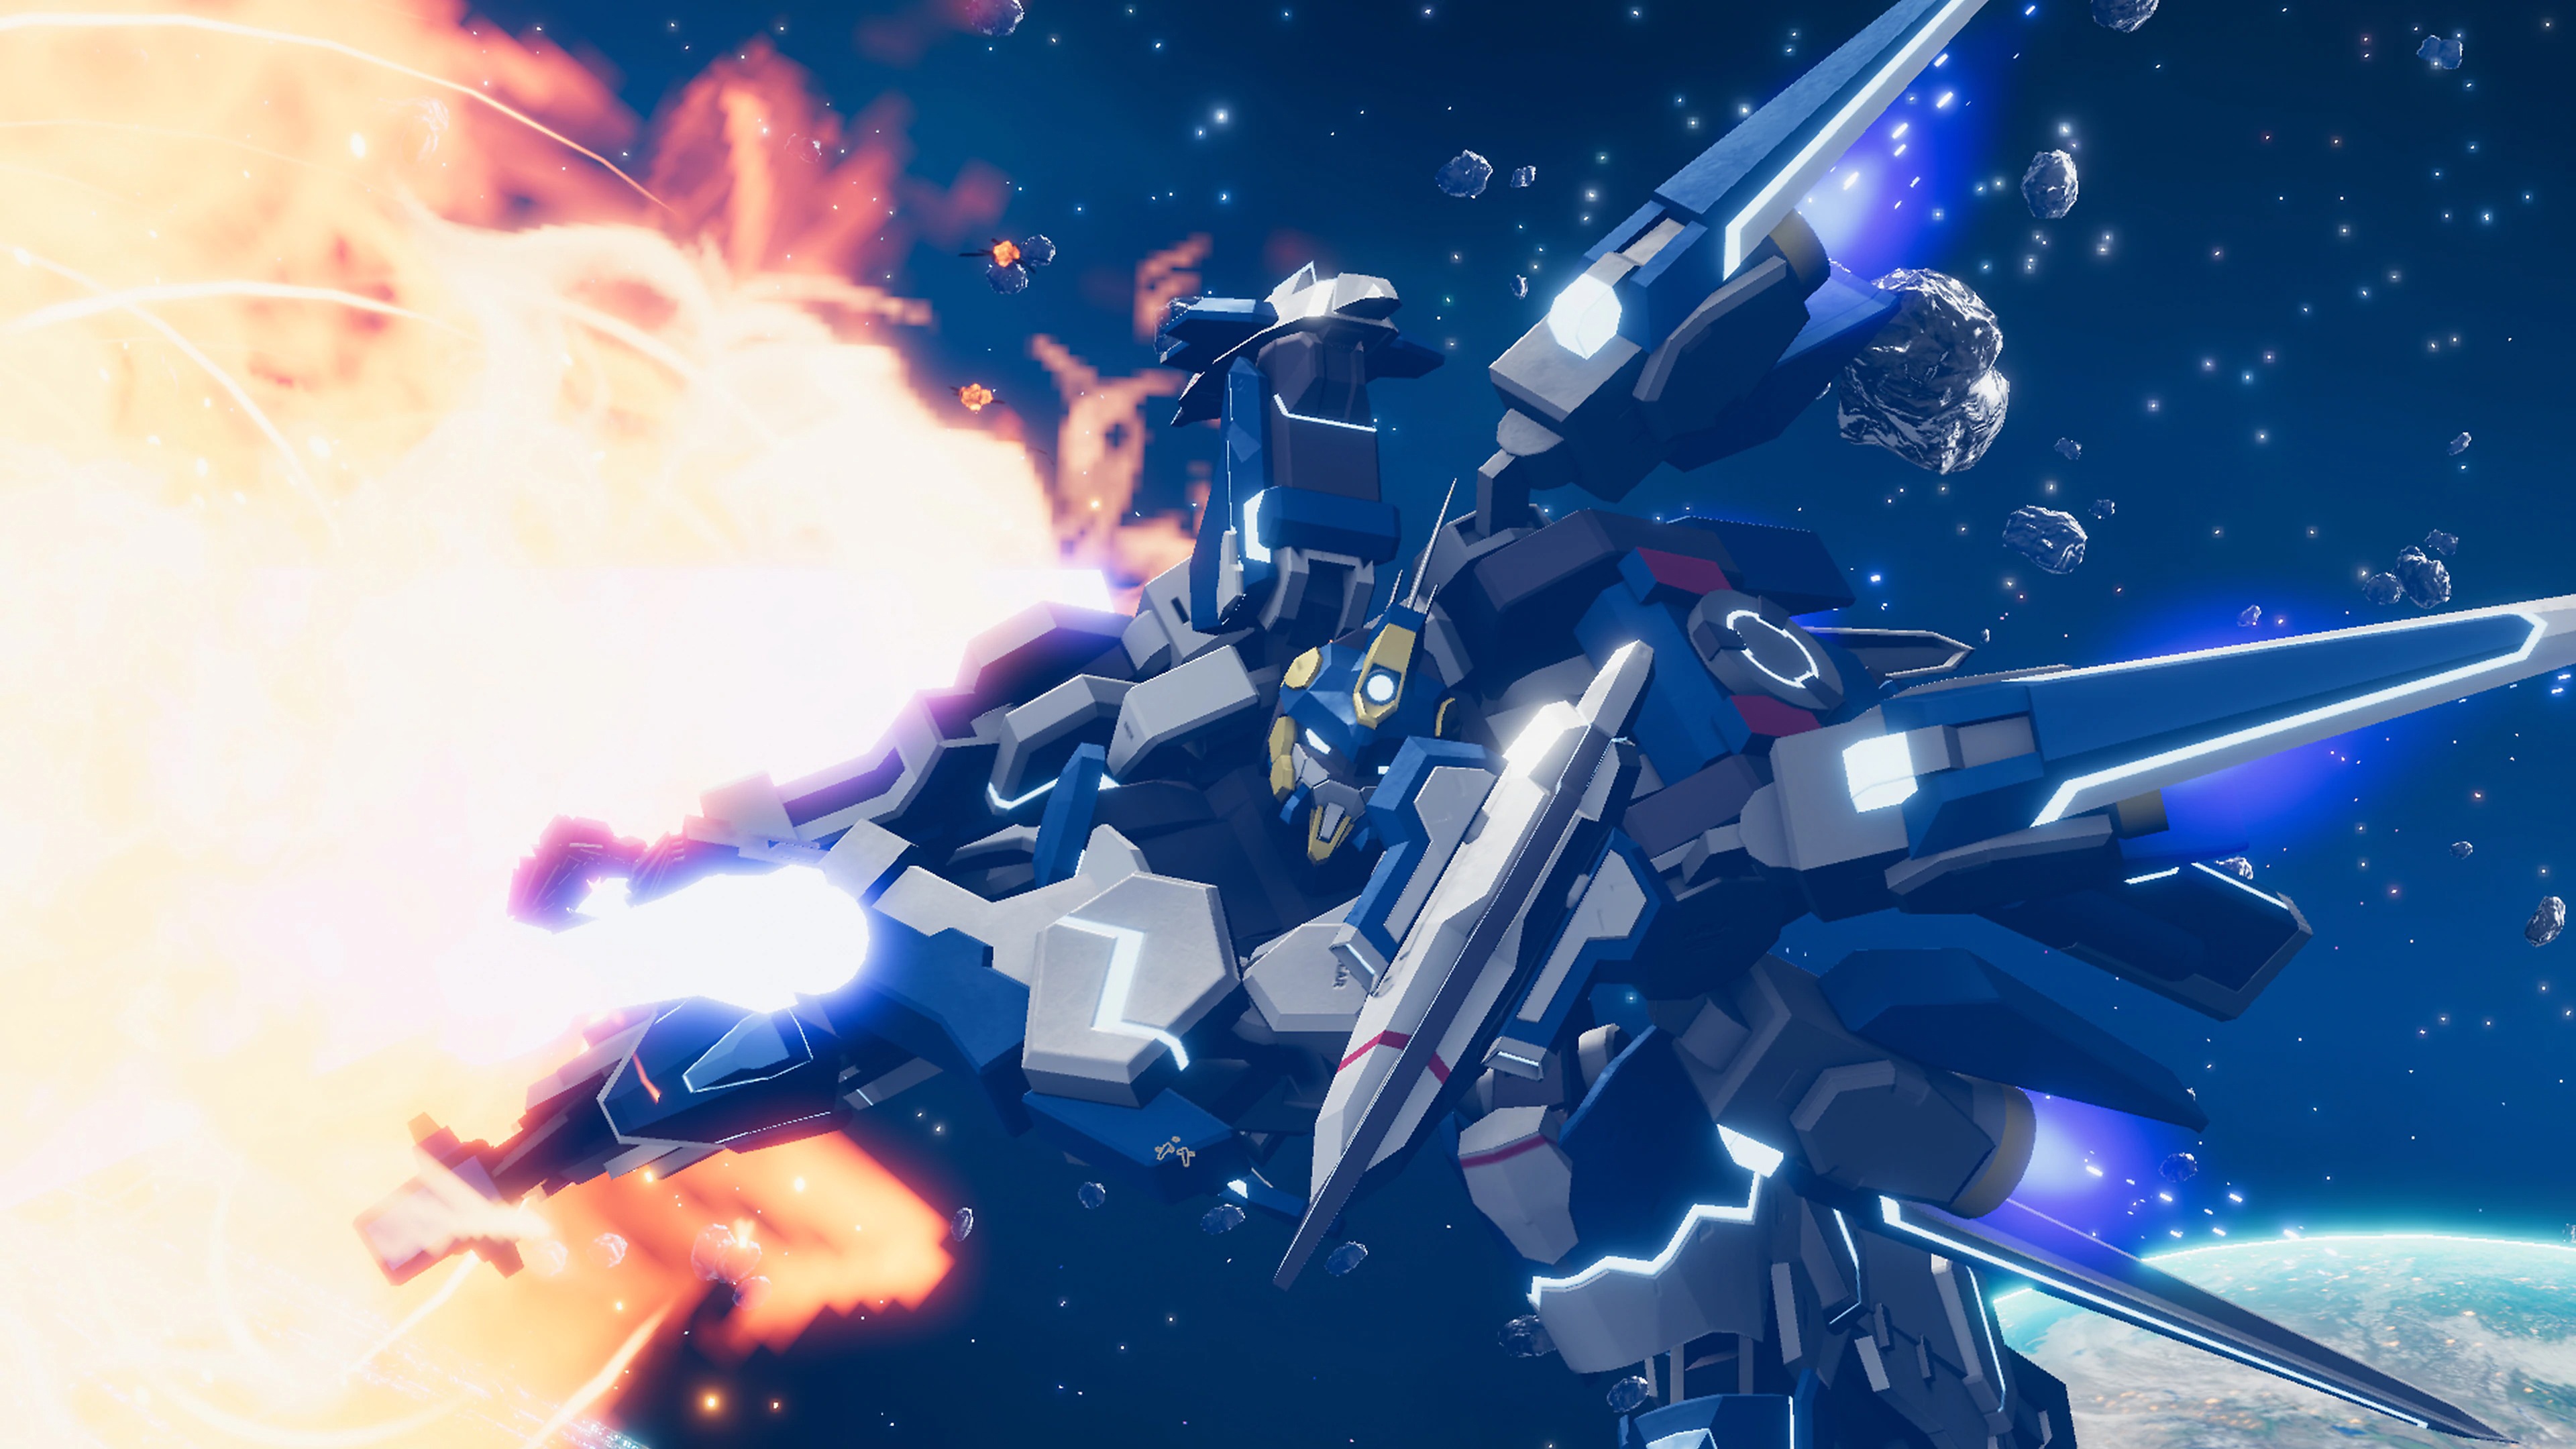 Relayer - Captura de tela exibindo a Stellar Gear, um robô humanoide gigante, voando para longe de uma explosão no espaço